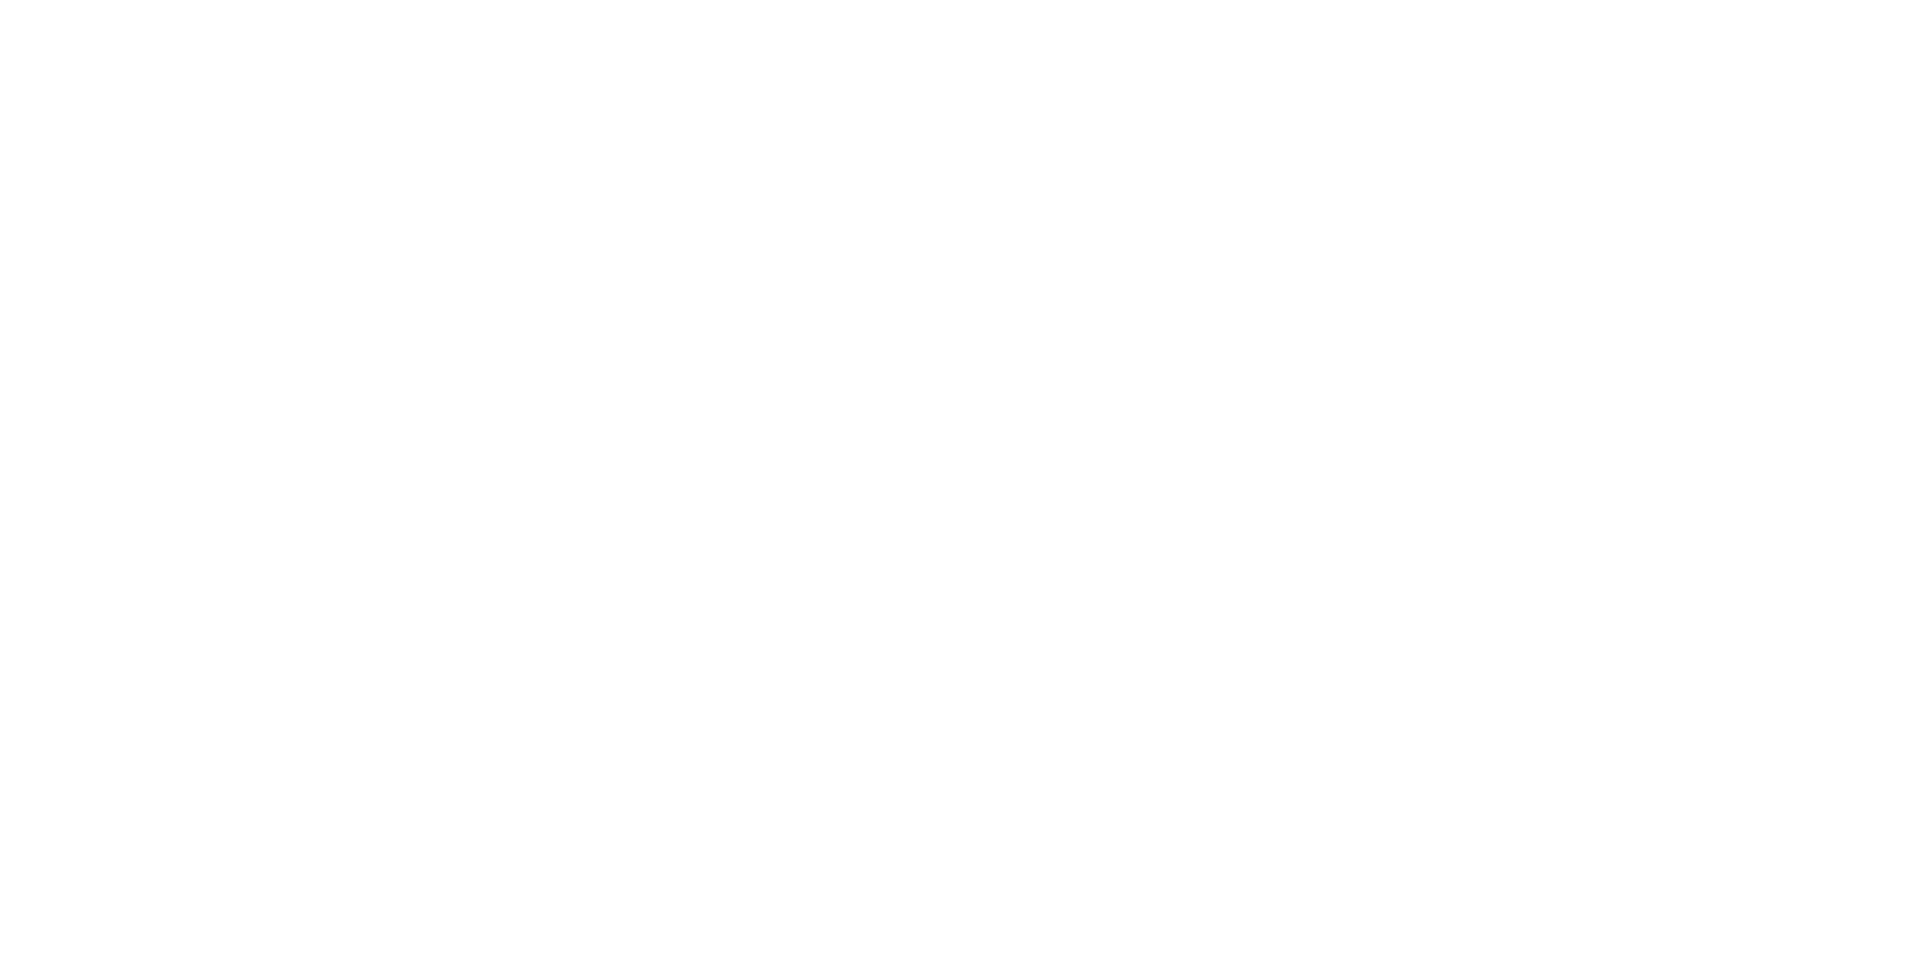 LeeuwKop Hunting Safari’s